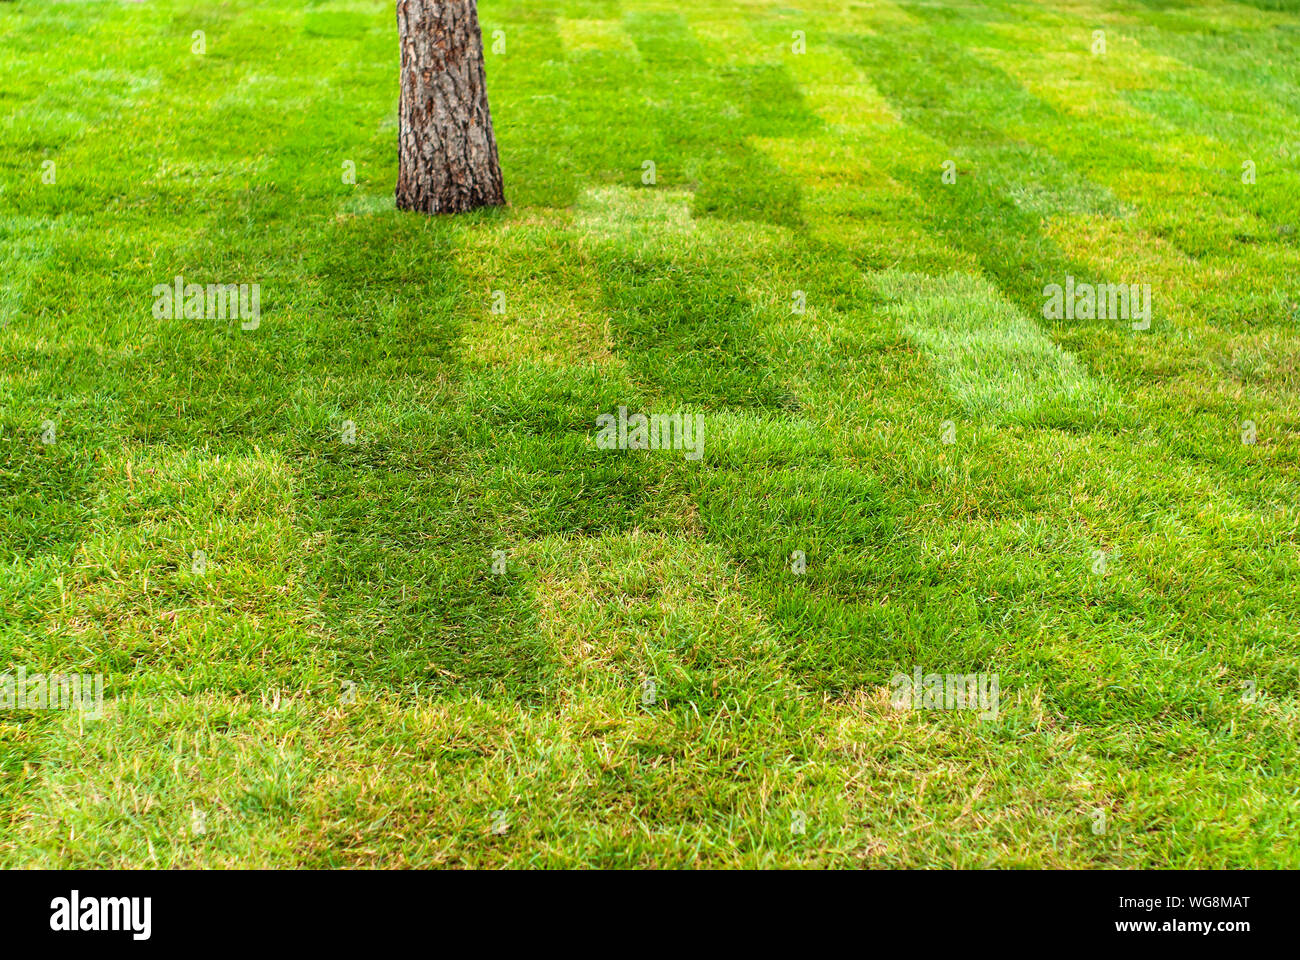 Hintergrund, Textur - frisch Rasen aus gewalzten Rasen gelegt Stockfoto